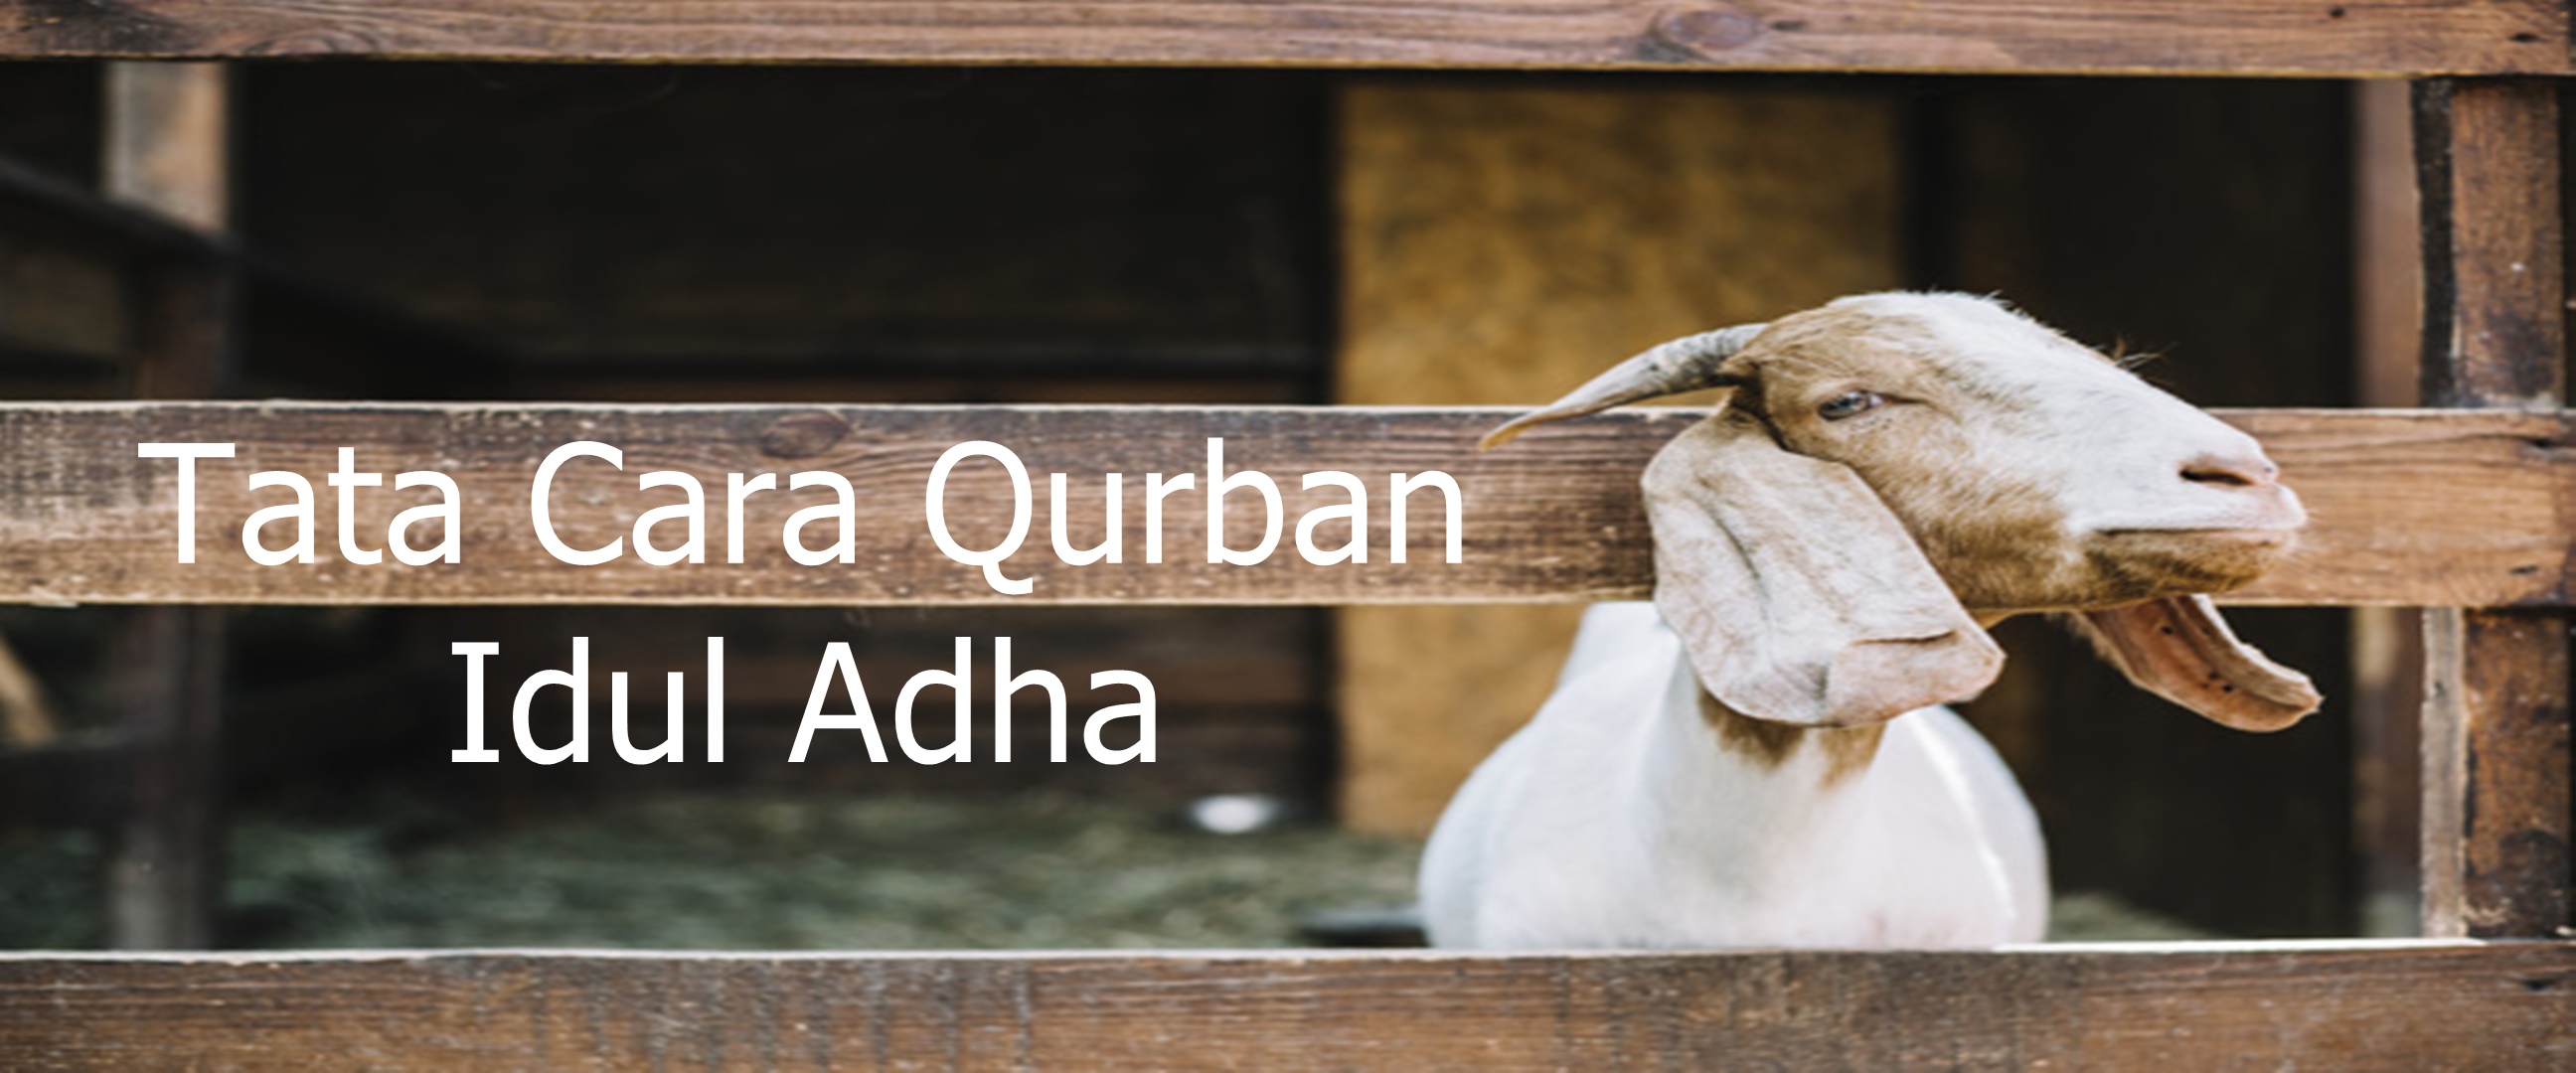 Tata cara qurban pada hari raya Idul Adha, lengkap, mudah dipahami